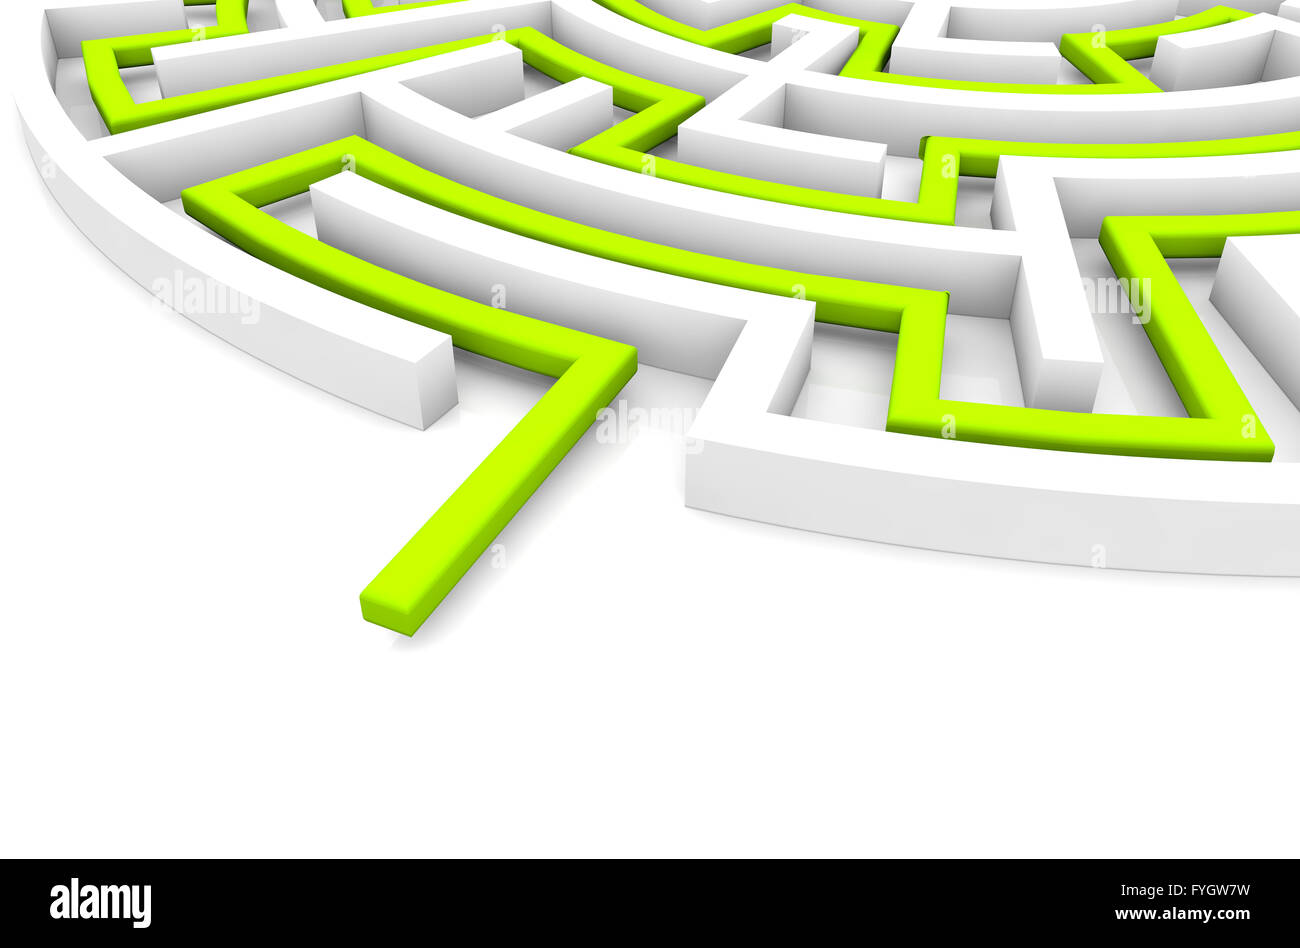 Il concetto di strategia: eseguire il rendering di un labirinto con soluzione in verde Foto Stock